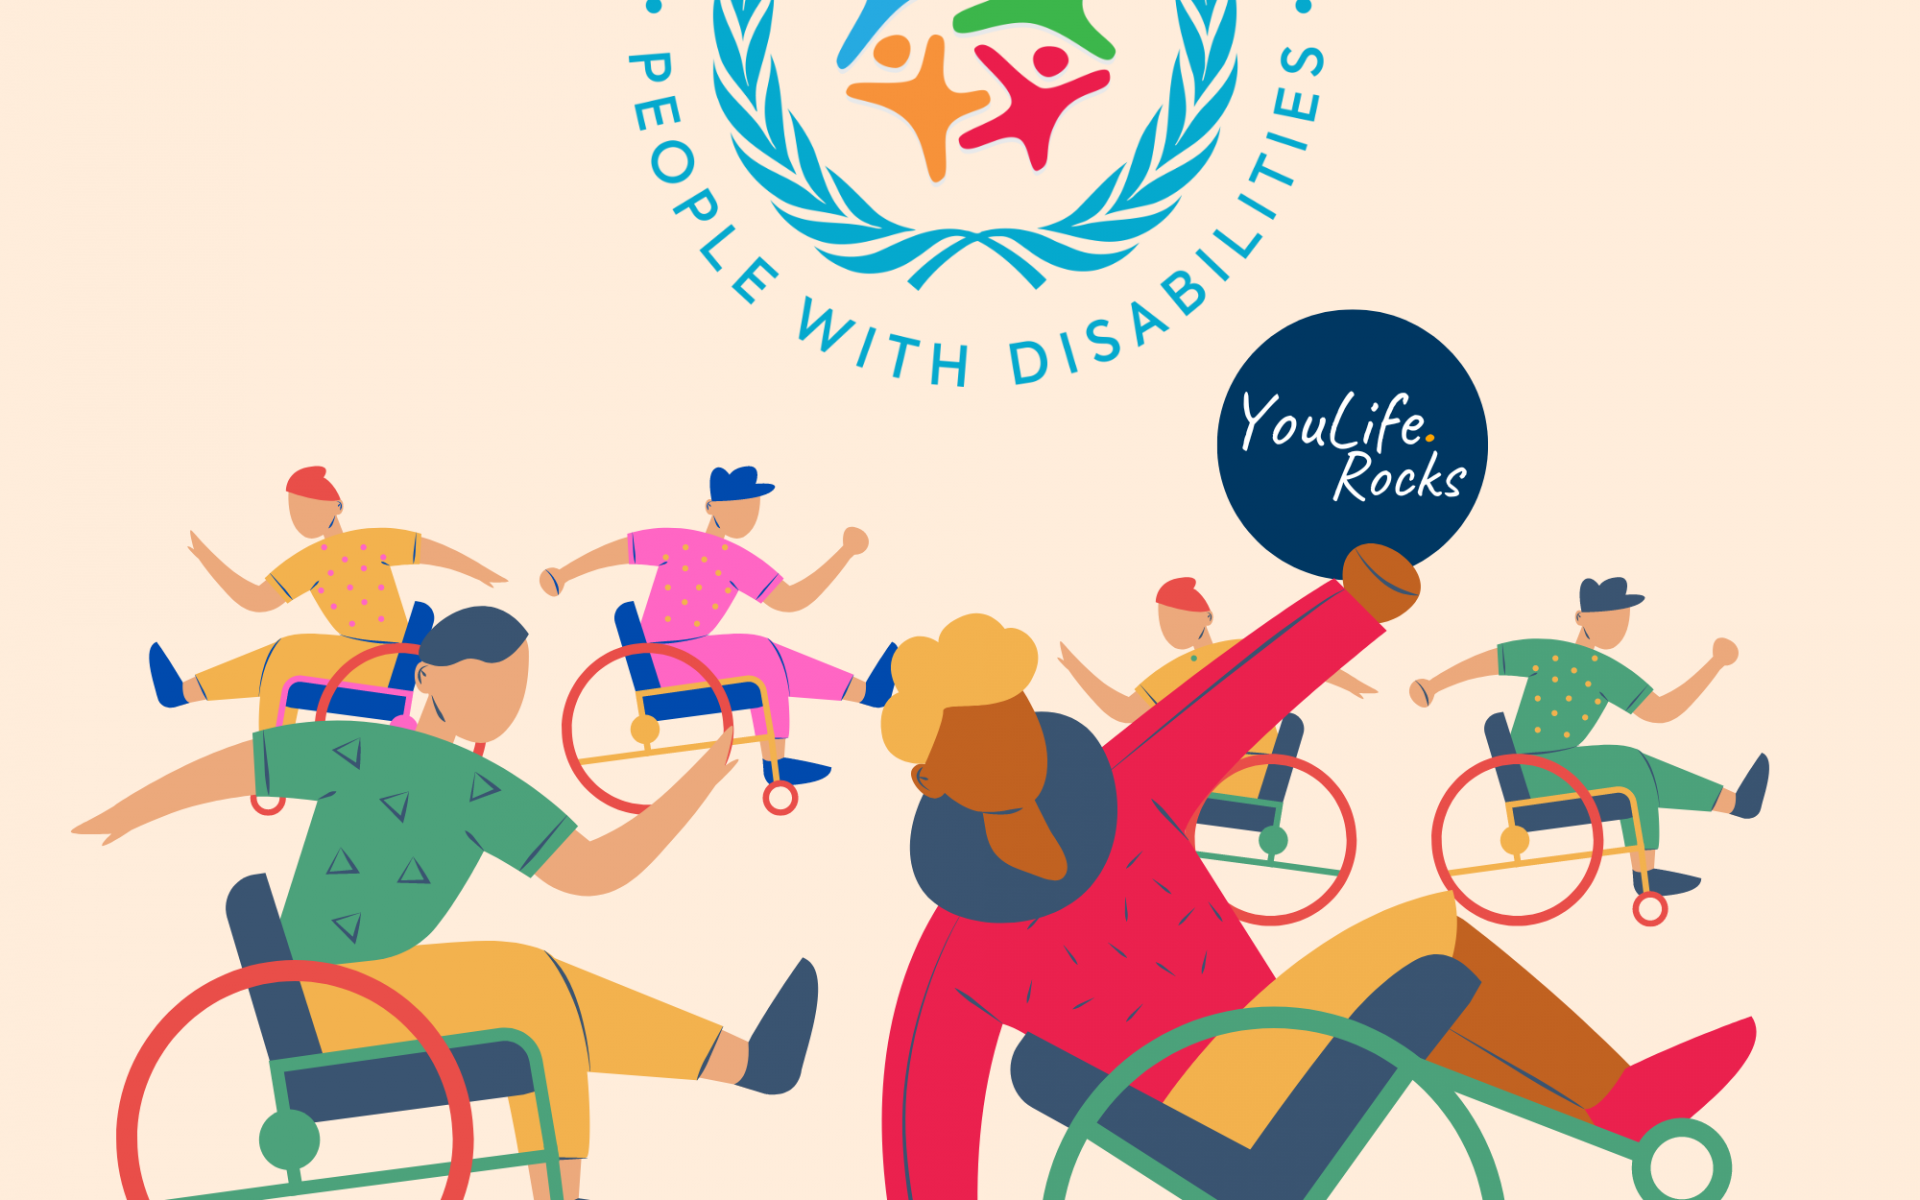 Stilisierte Menschen im Rollstuhl tanzen und haben Spass. Eine Person hält das YouLife.Rocks-Logo in der Hand. Über der Menge schwebt das Logo des IDPWD